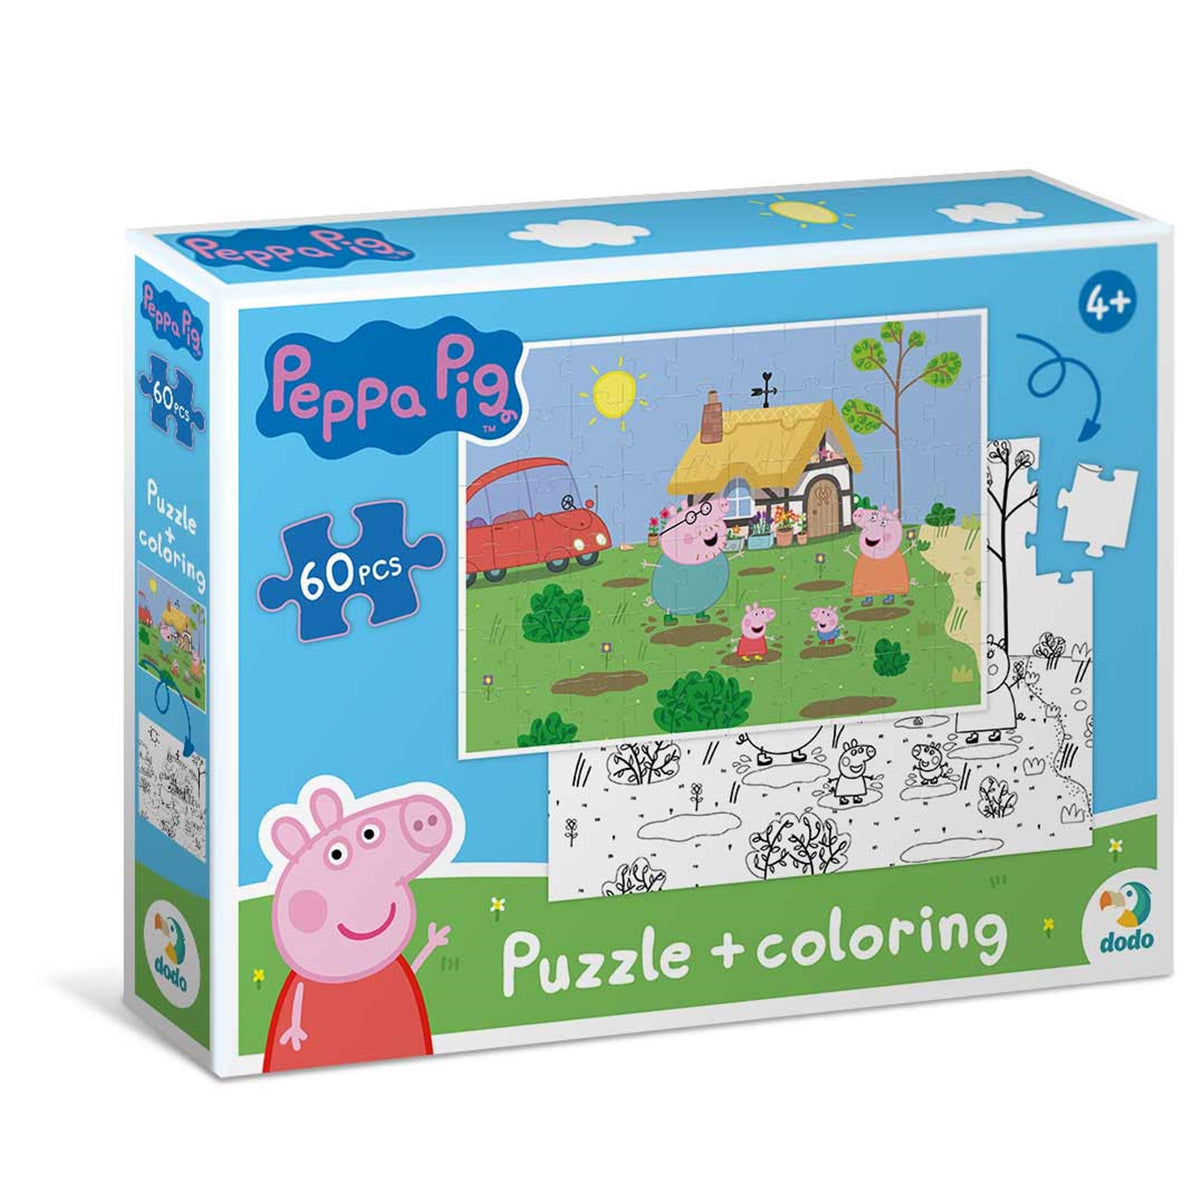 DODO Puzzle zum Ausmalen 2in1 Peppa Pig Spiele 60 Teile 4J+